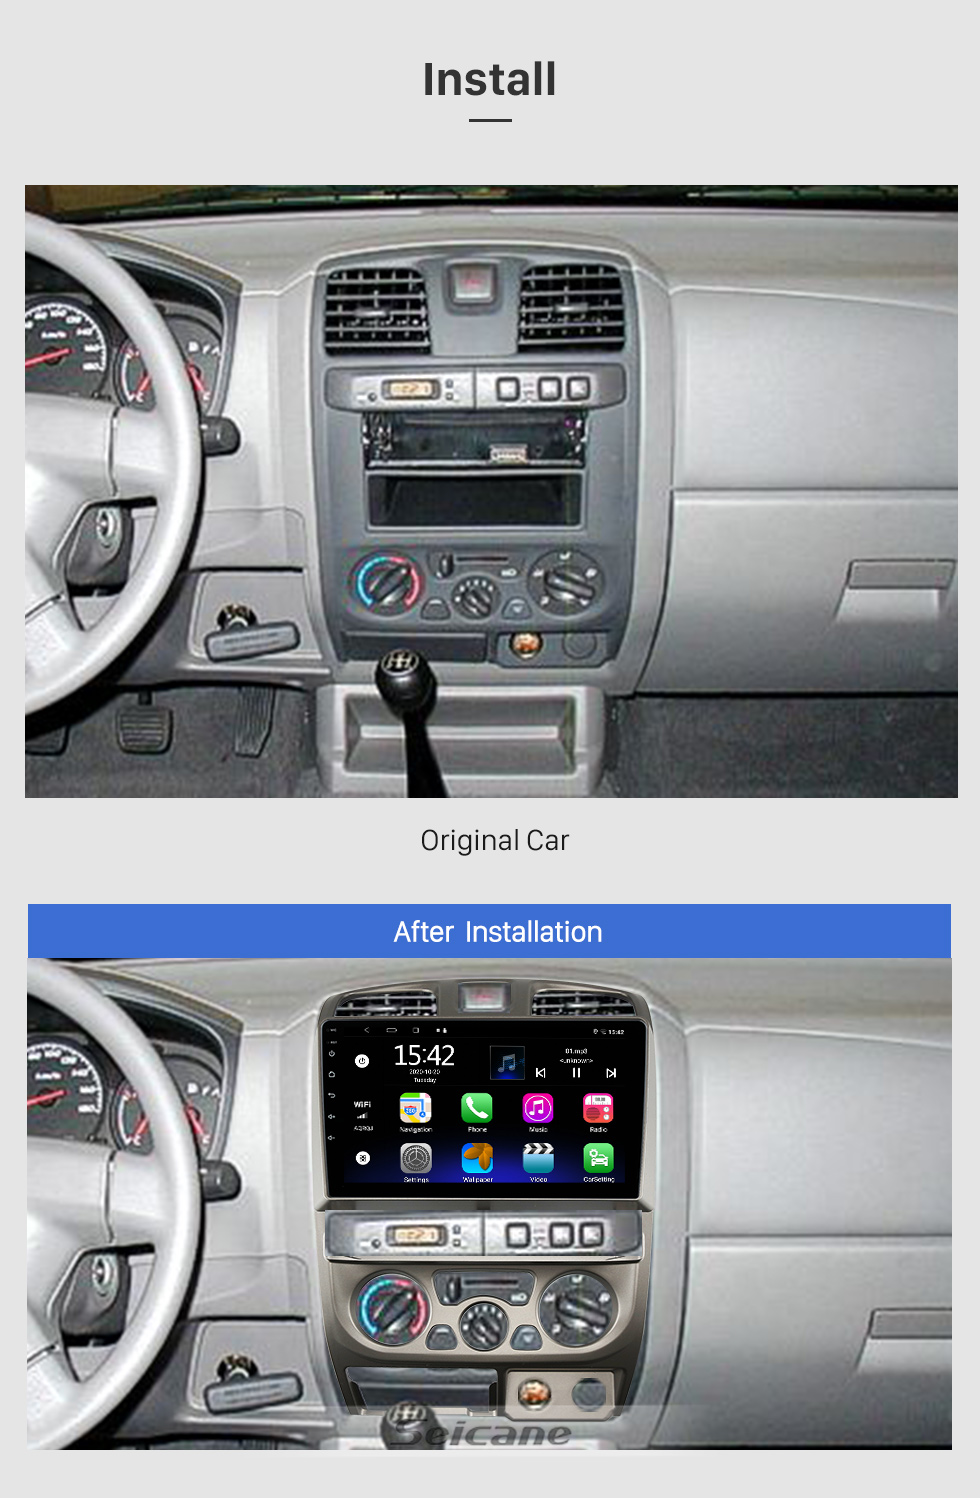 1 pieza de repuesto de pantalla táctil para coche para ATS CUE, reemplazo de  pantalla táctil fácil de monta kusrkot pantalla táctil para coche